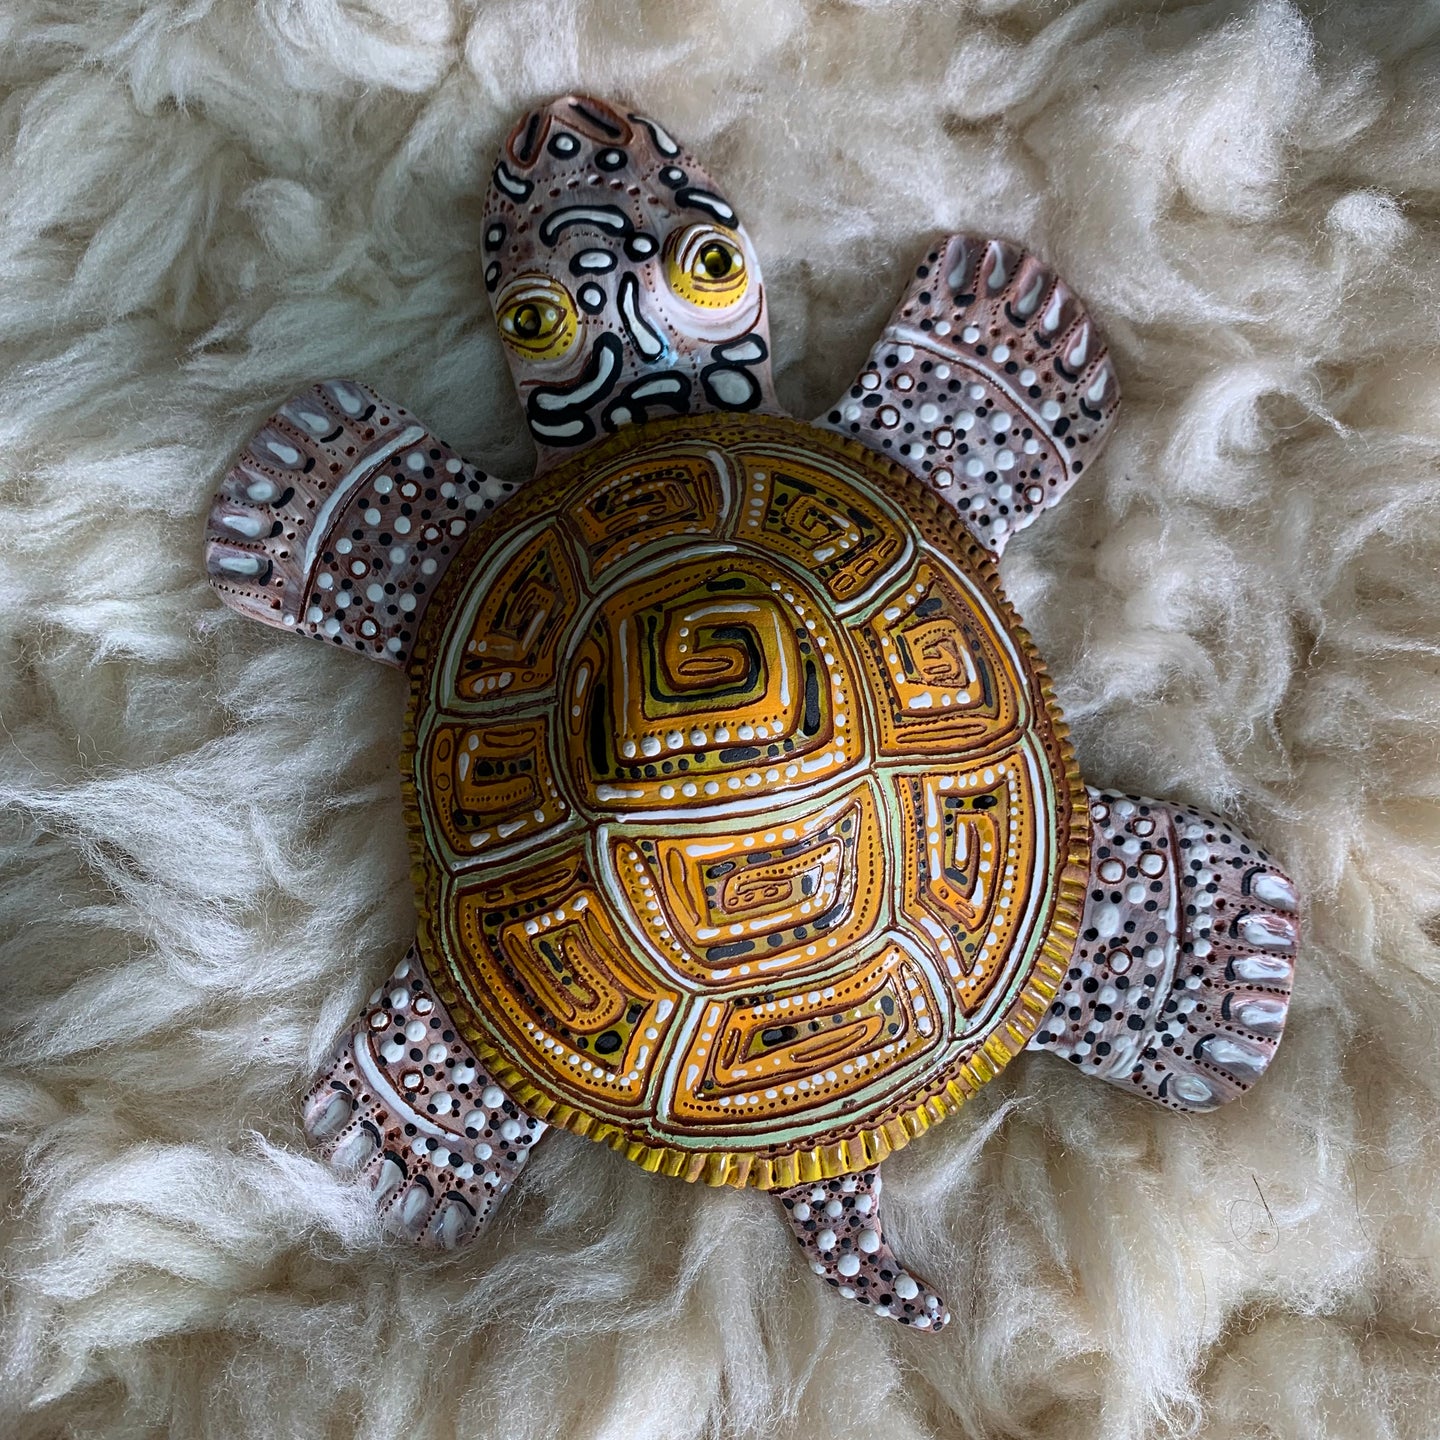 Diamondback terrapin wall turtle